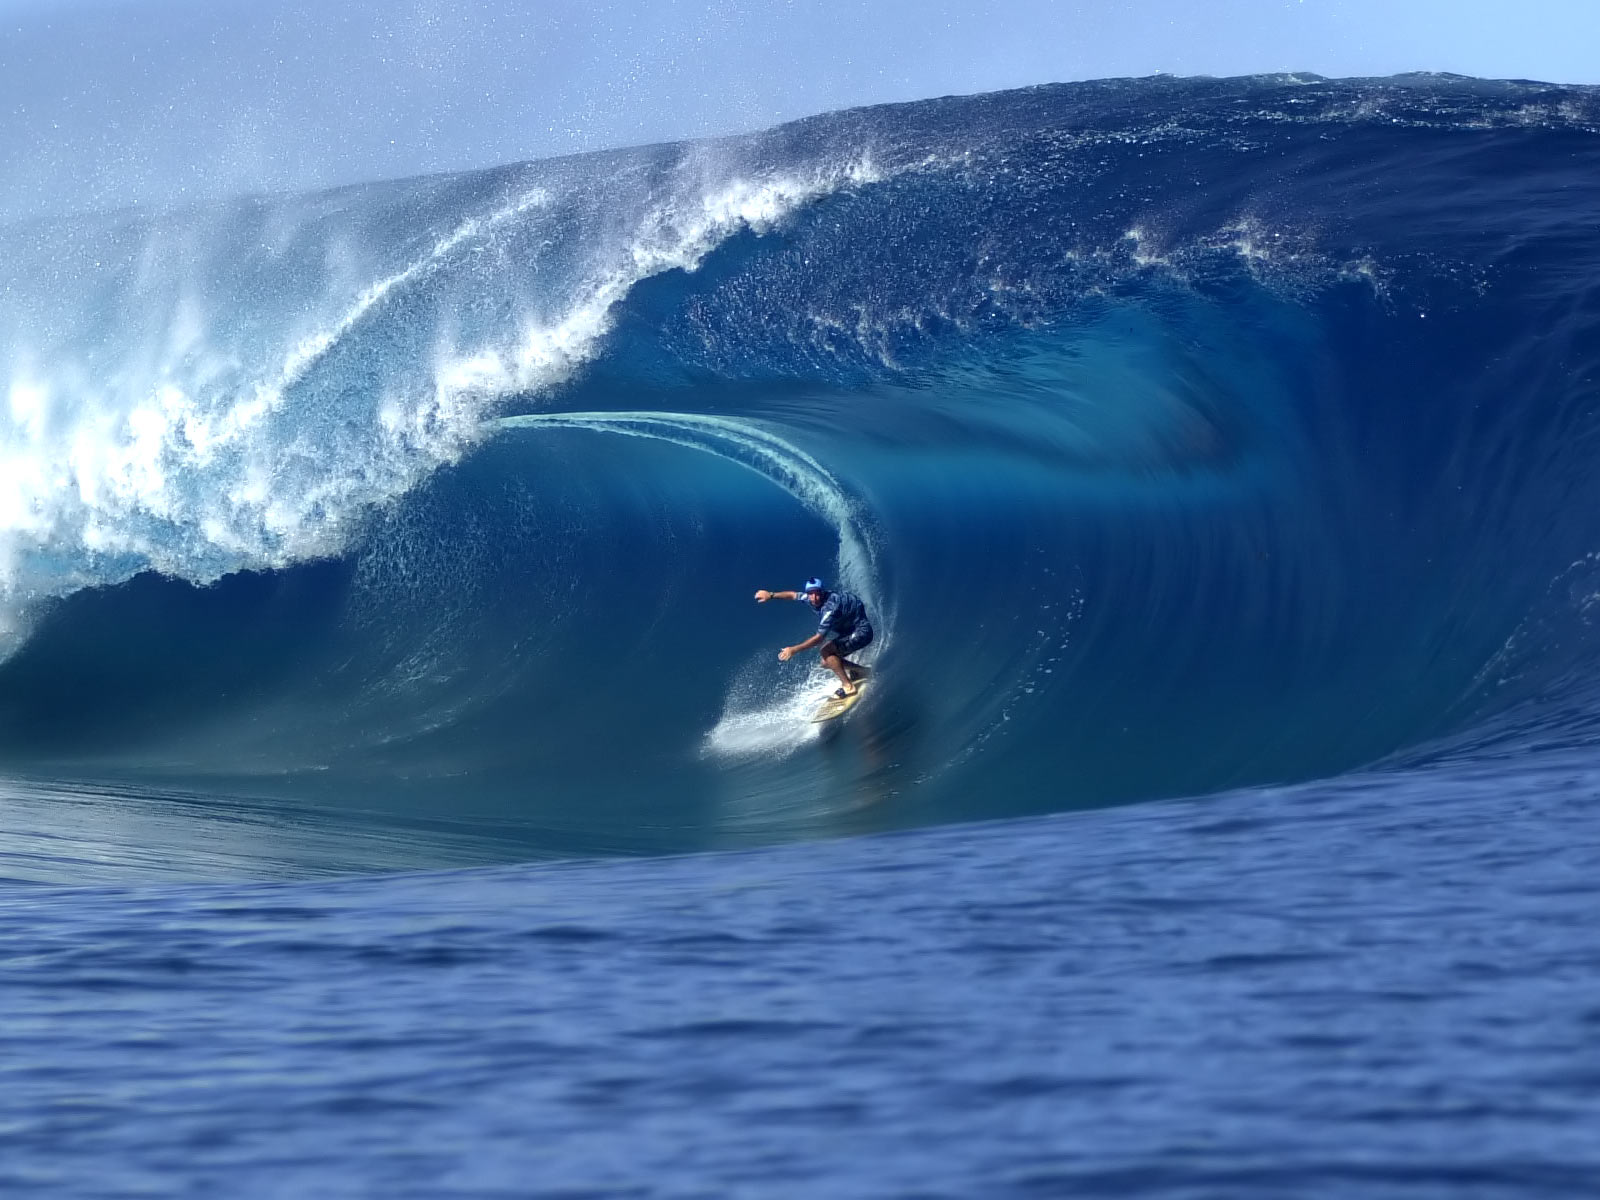 Wallpaper Of Surfing Hawaii Puter Desktop Image